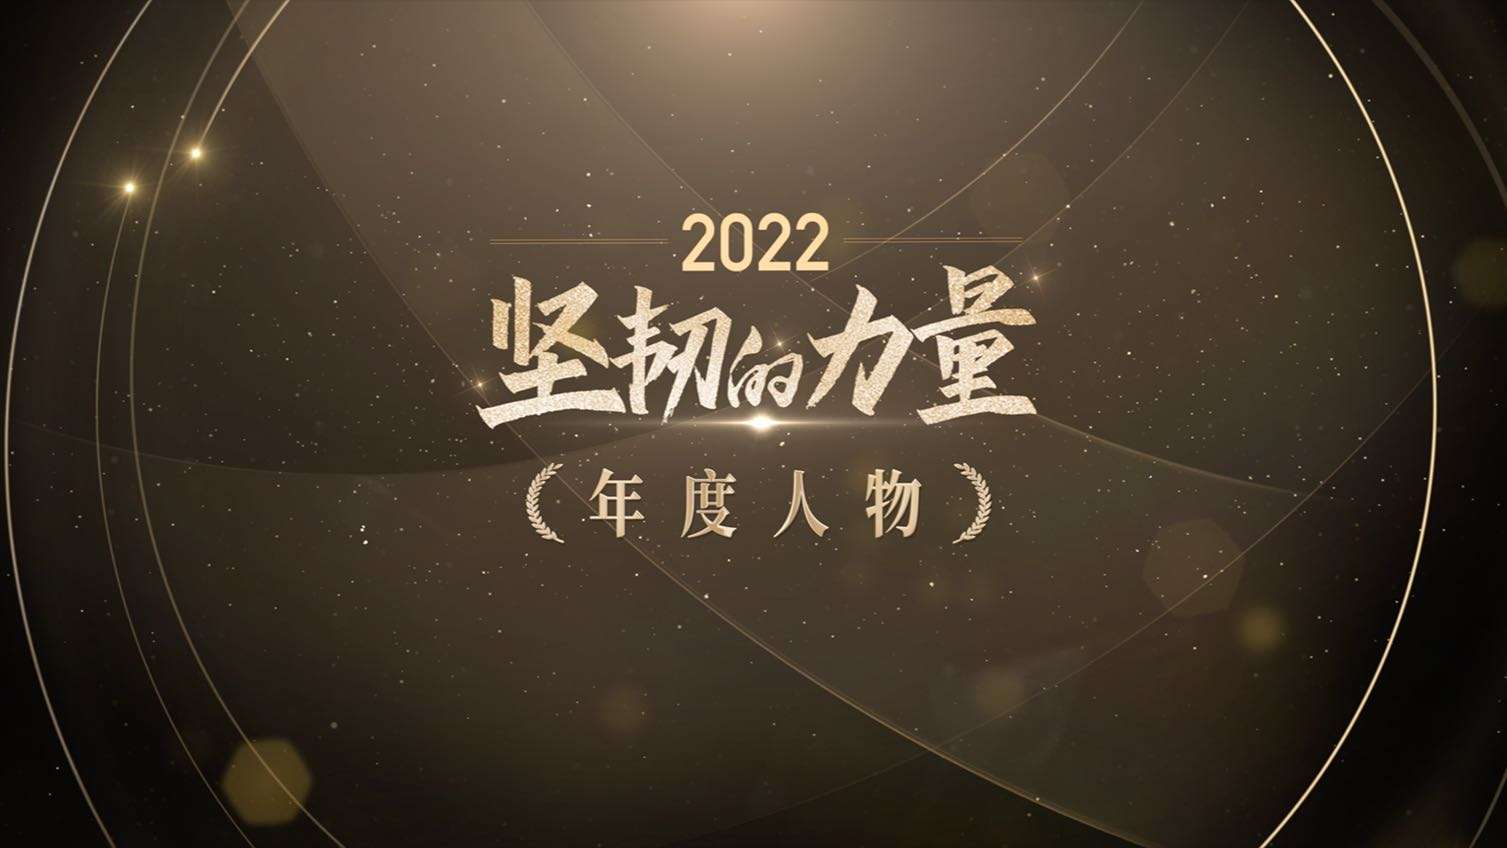 2022中国慈善家年度人物揭晓短片丨莫言 张伯礼 海清 陈越光 蔡磊 郝南 何军